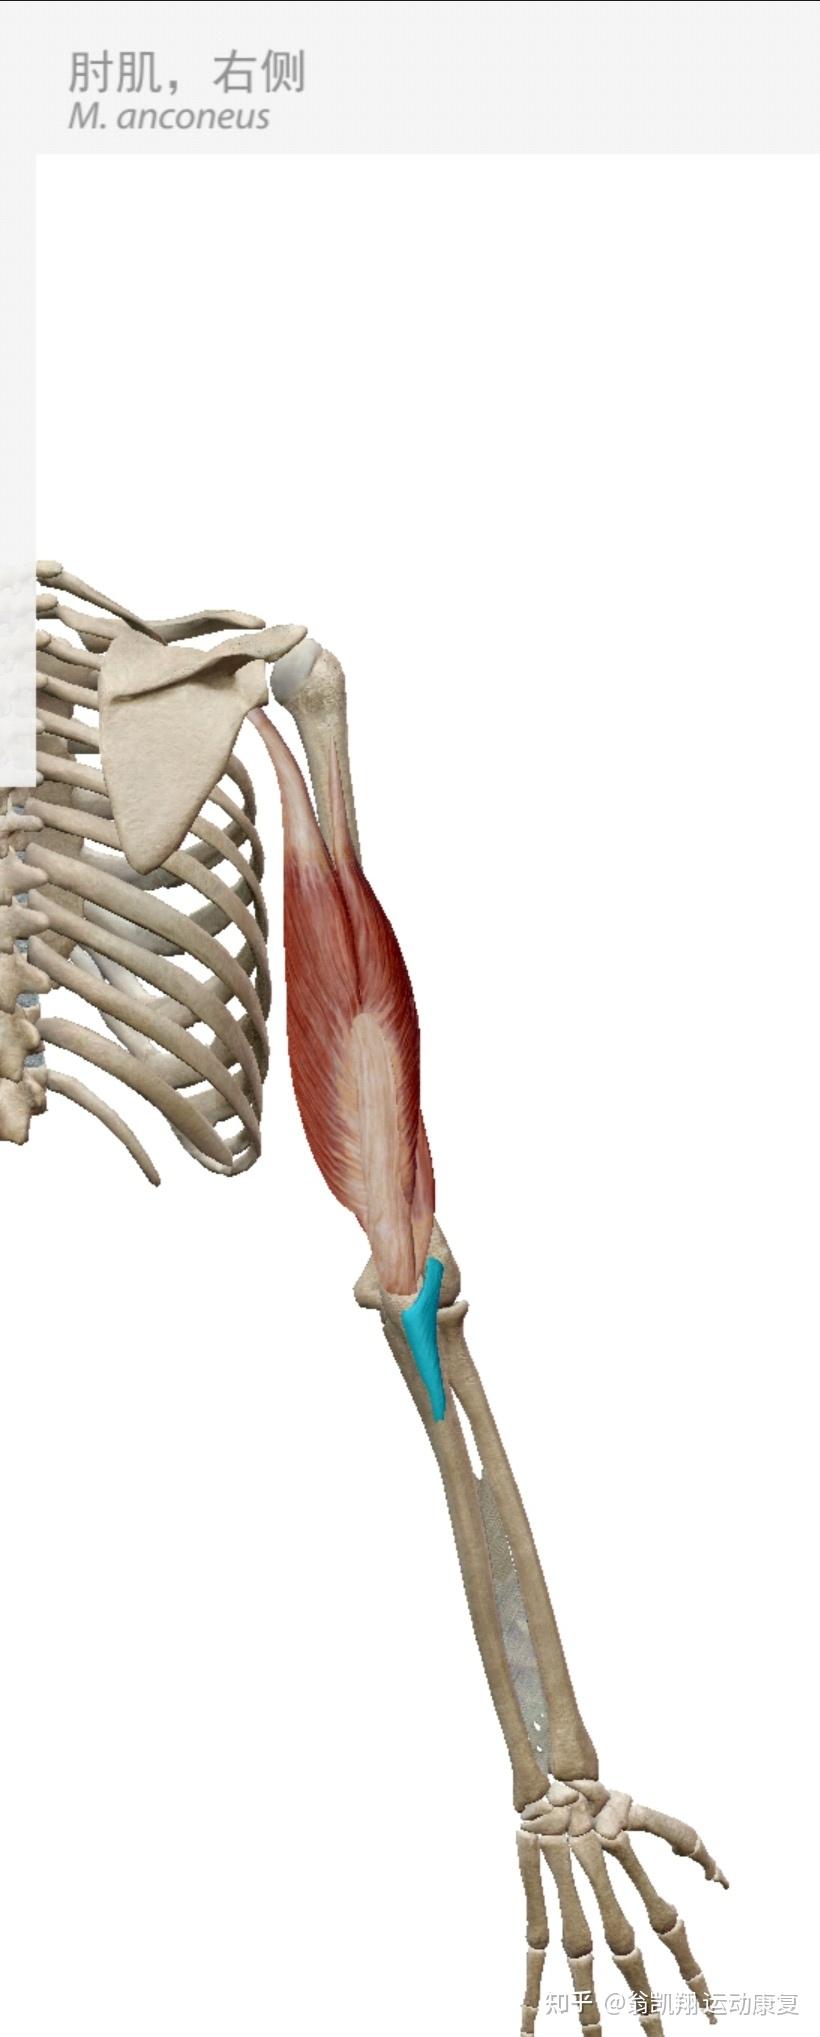 肘肌和它导致我们疼痛的原因从某种意义上可以说它是解锁肘关节的钥匙